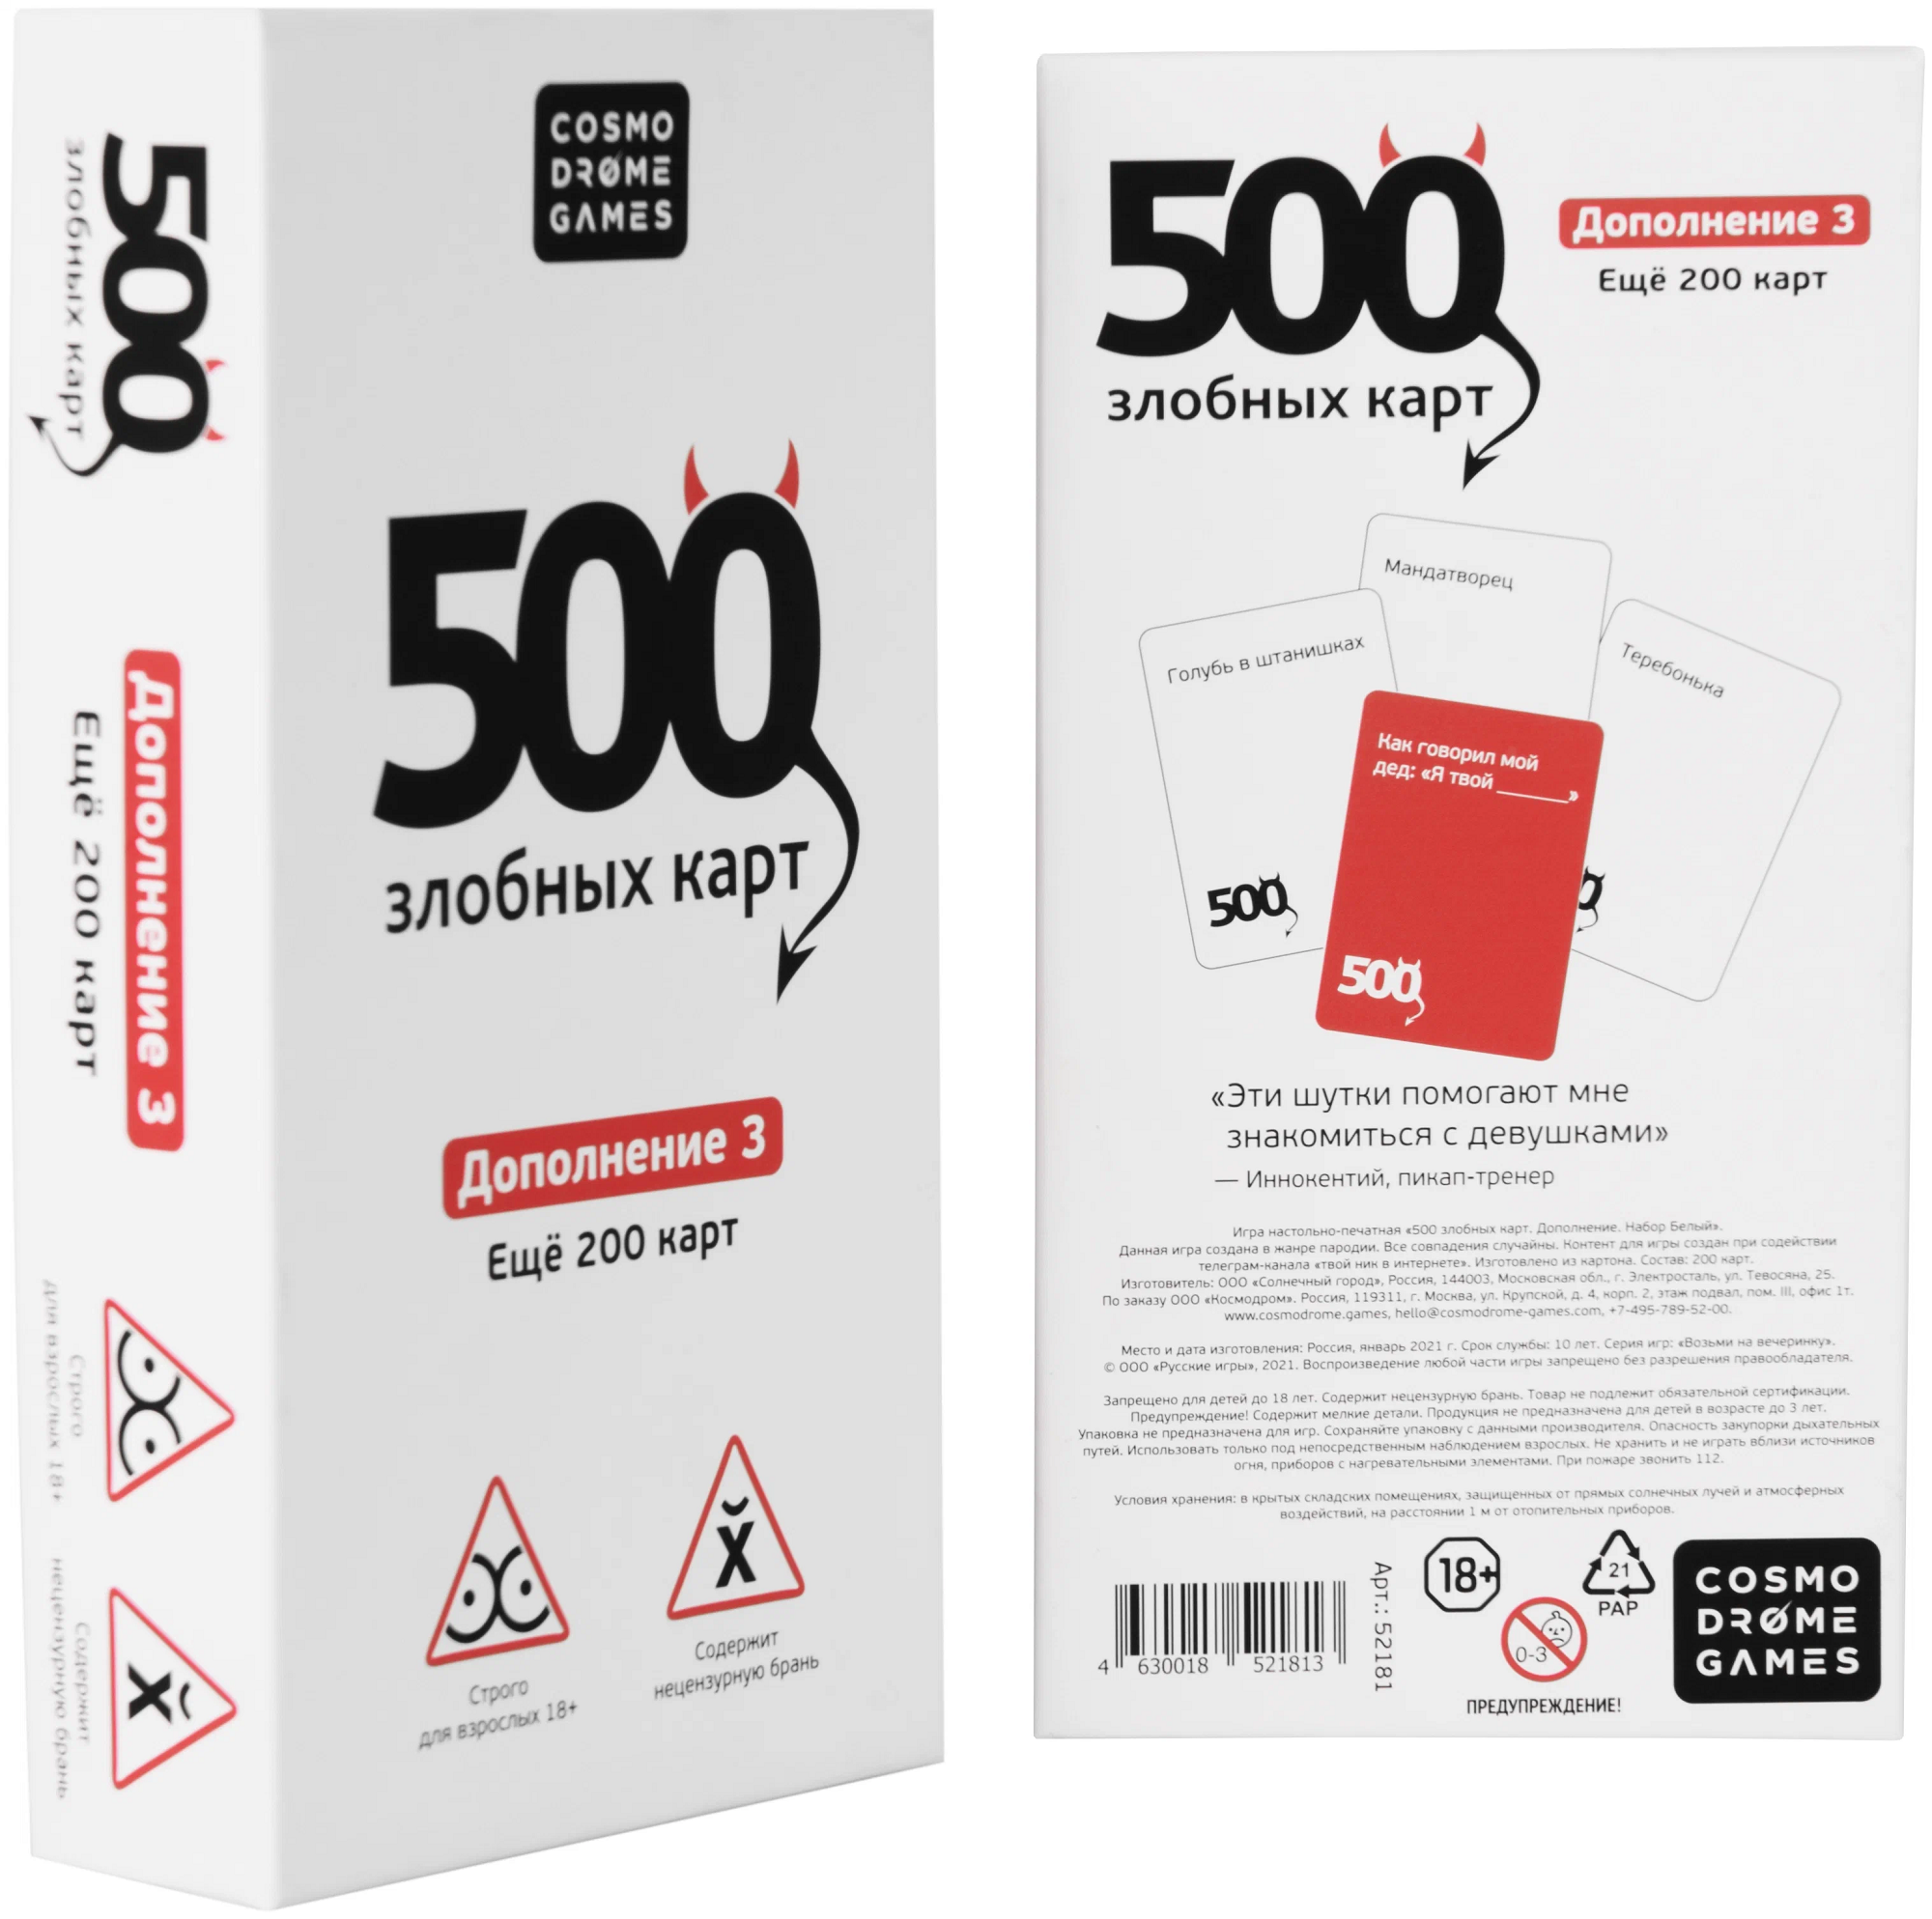 Cosmodrome Games Настольная игра "500 Злобных карт" ДОПОЛНЕНИЕ белое